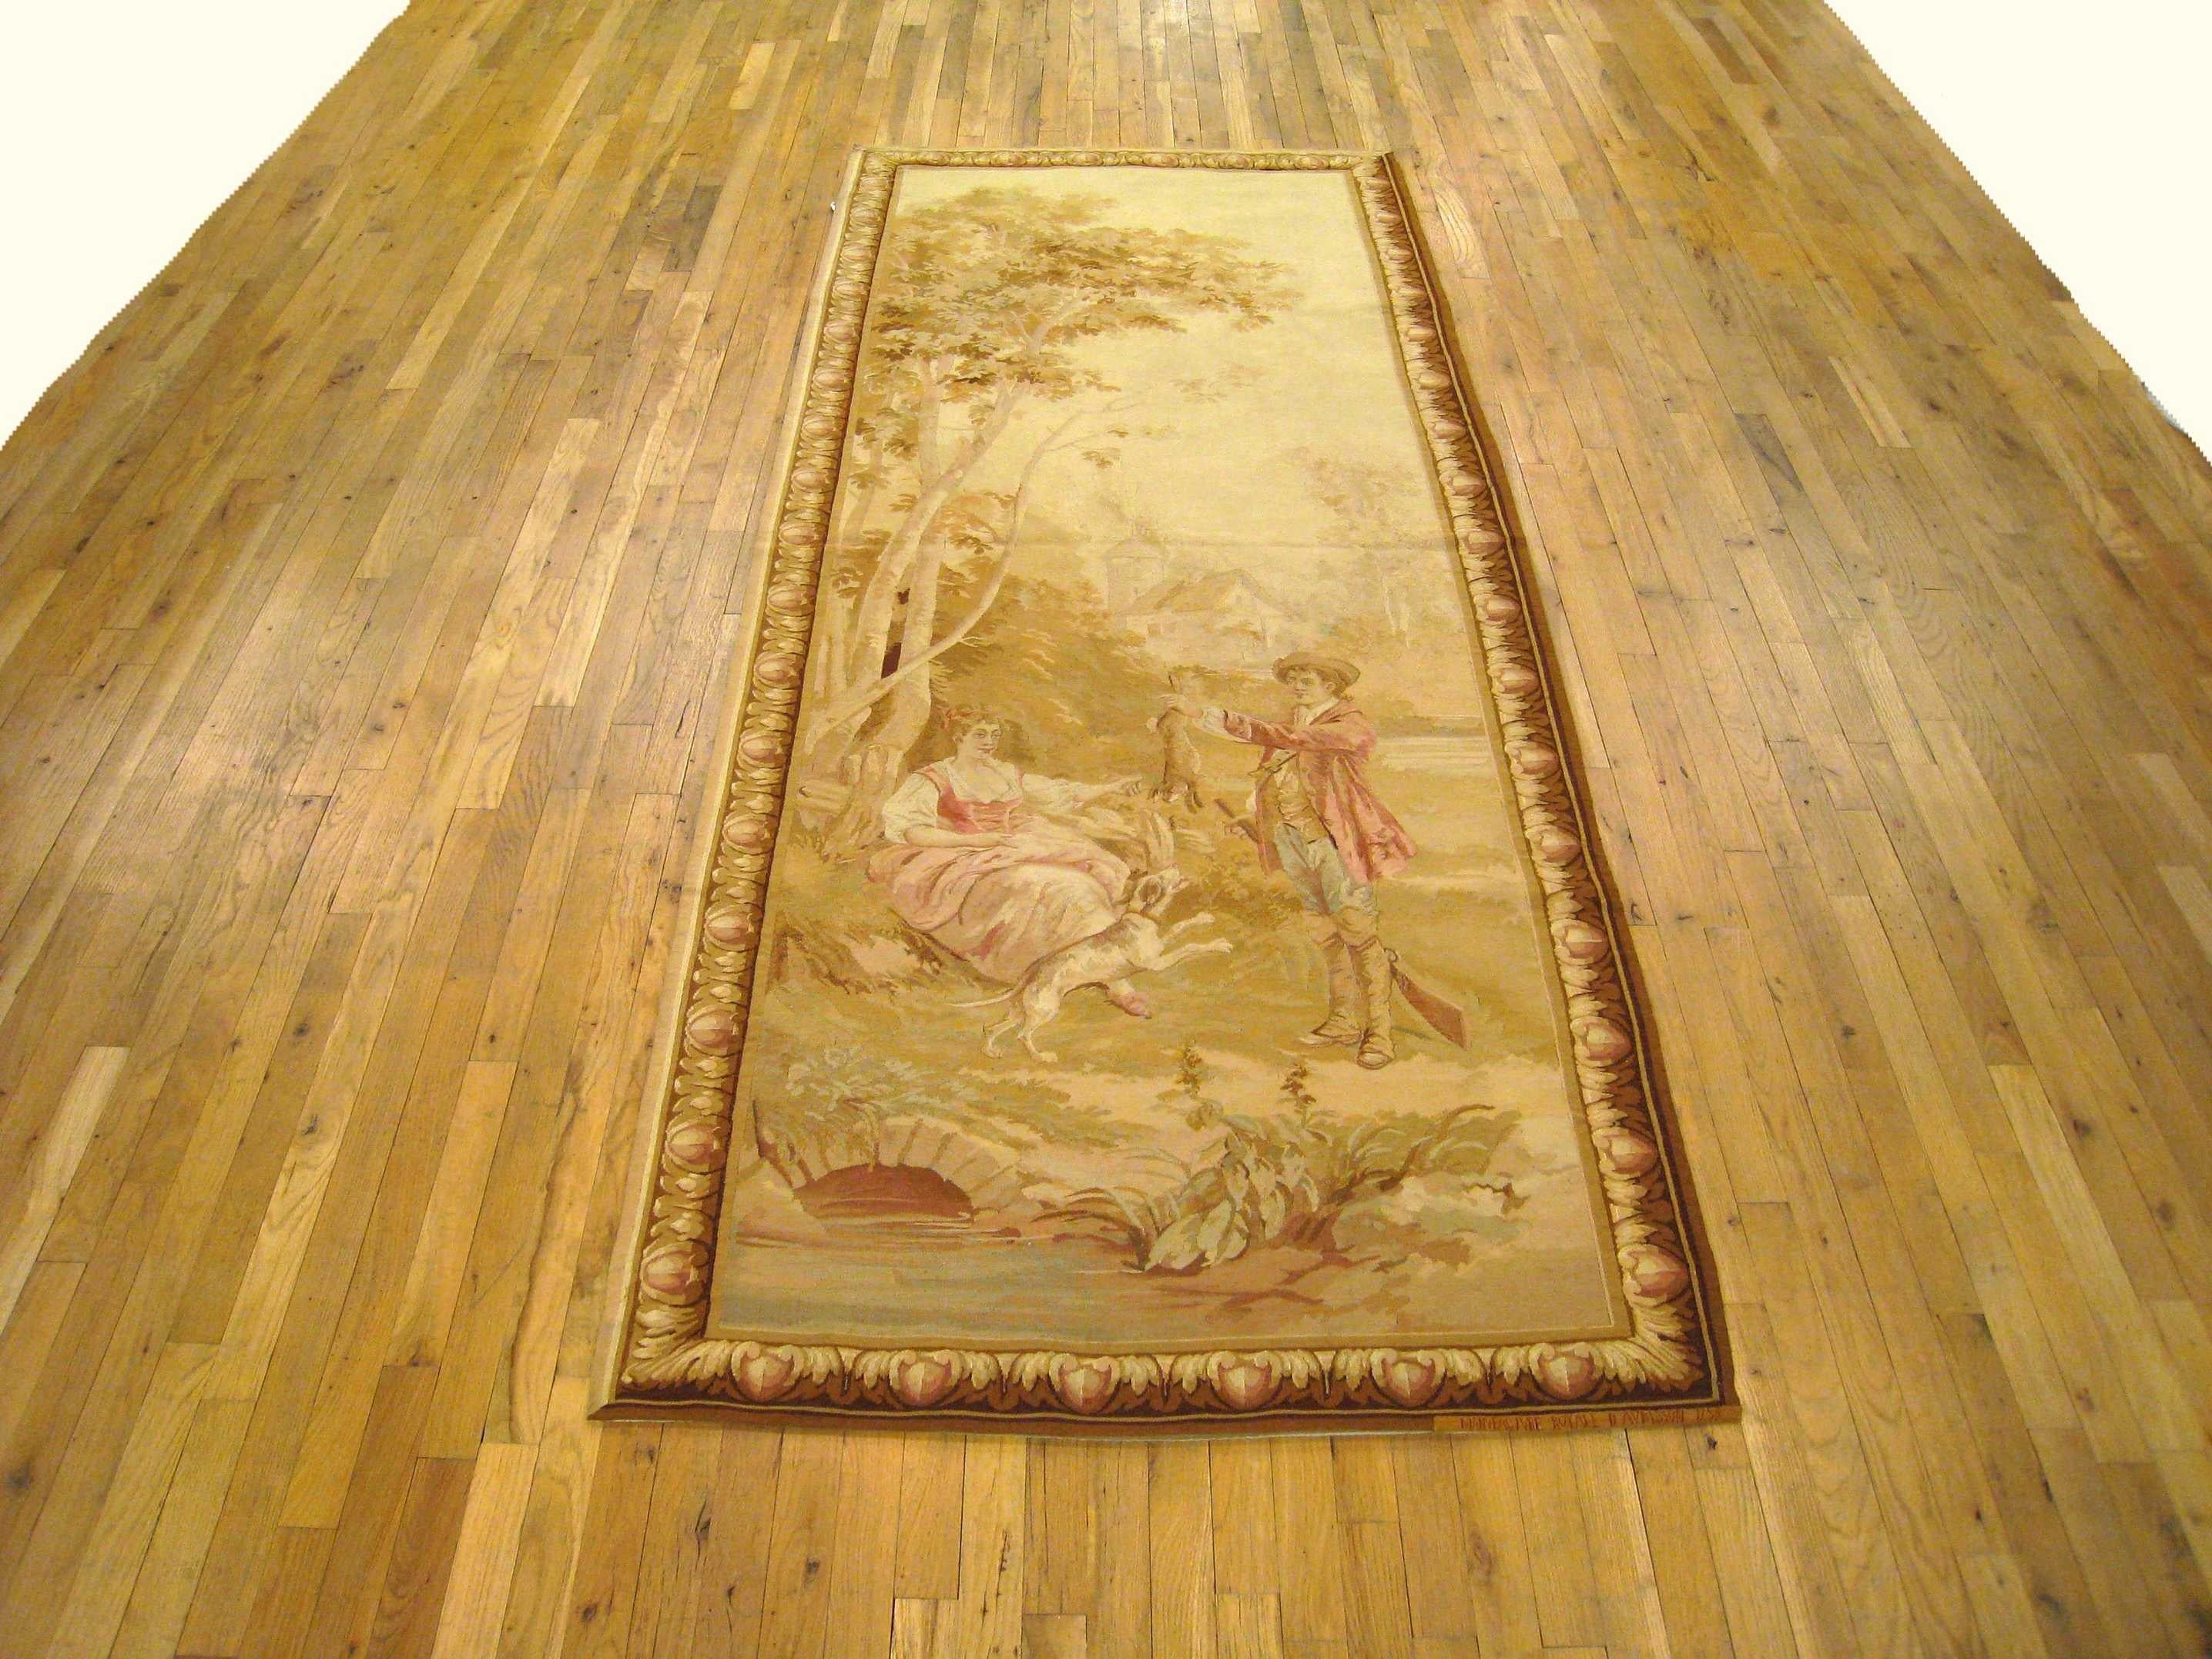 Panneau de tapisserie rustique d'Aubusson datant de la fin du XIXe siècle, représentant une scène dans laquelle un jeune homme présente à son chien avide le gibier qu'il a attrapé à la chasse, tandis que sa fiancée, assise sous un arbre à gauche, le